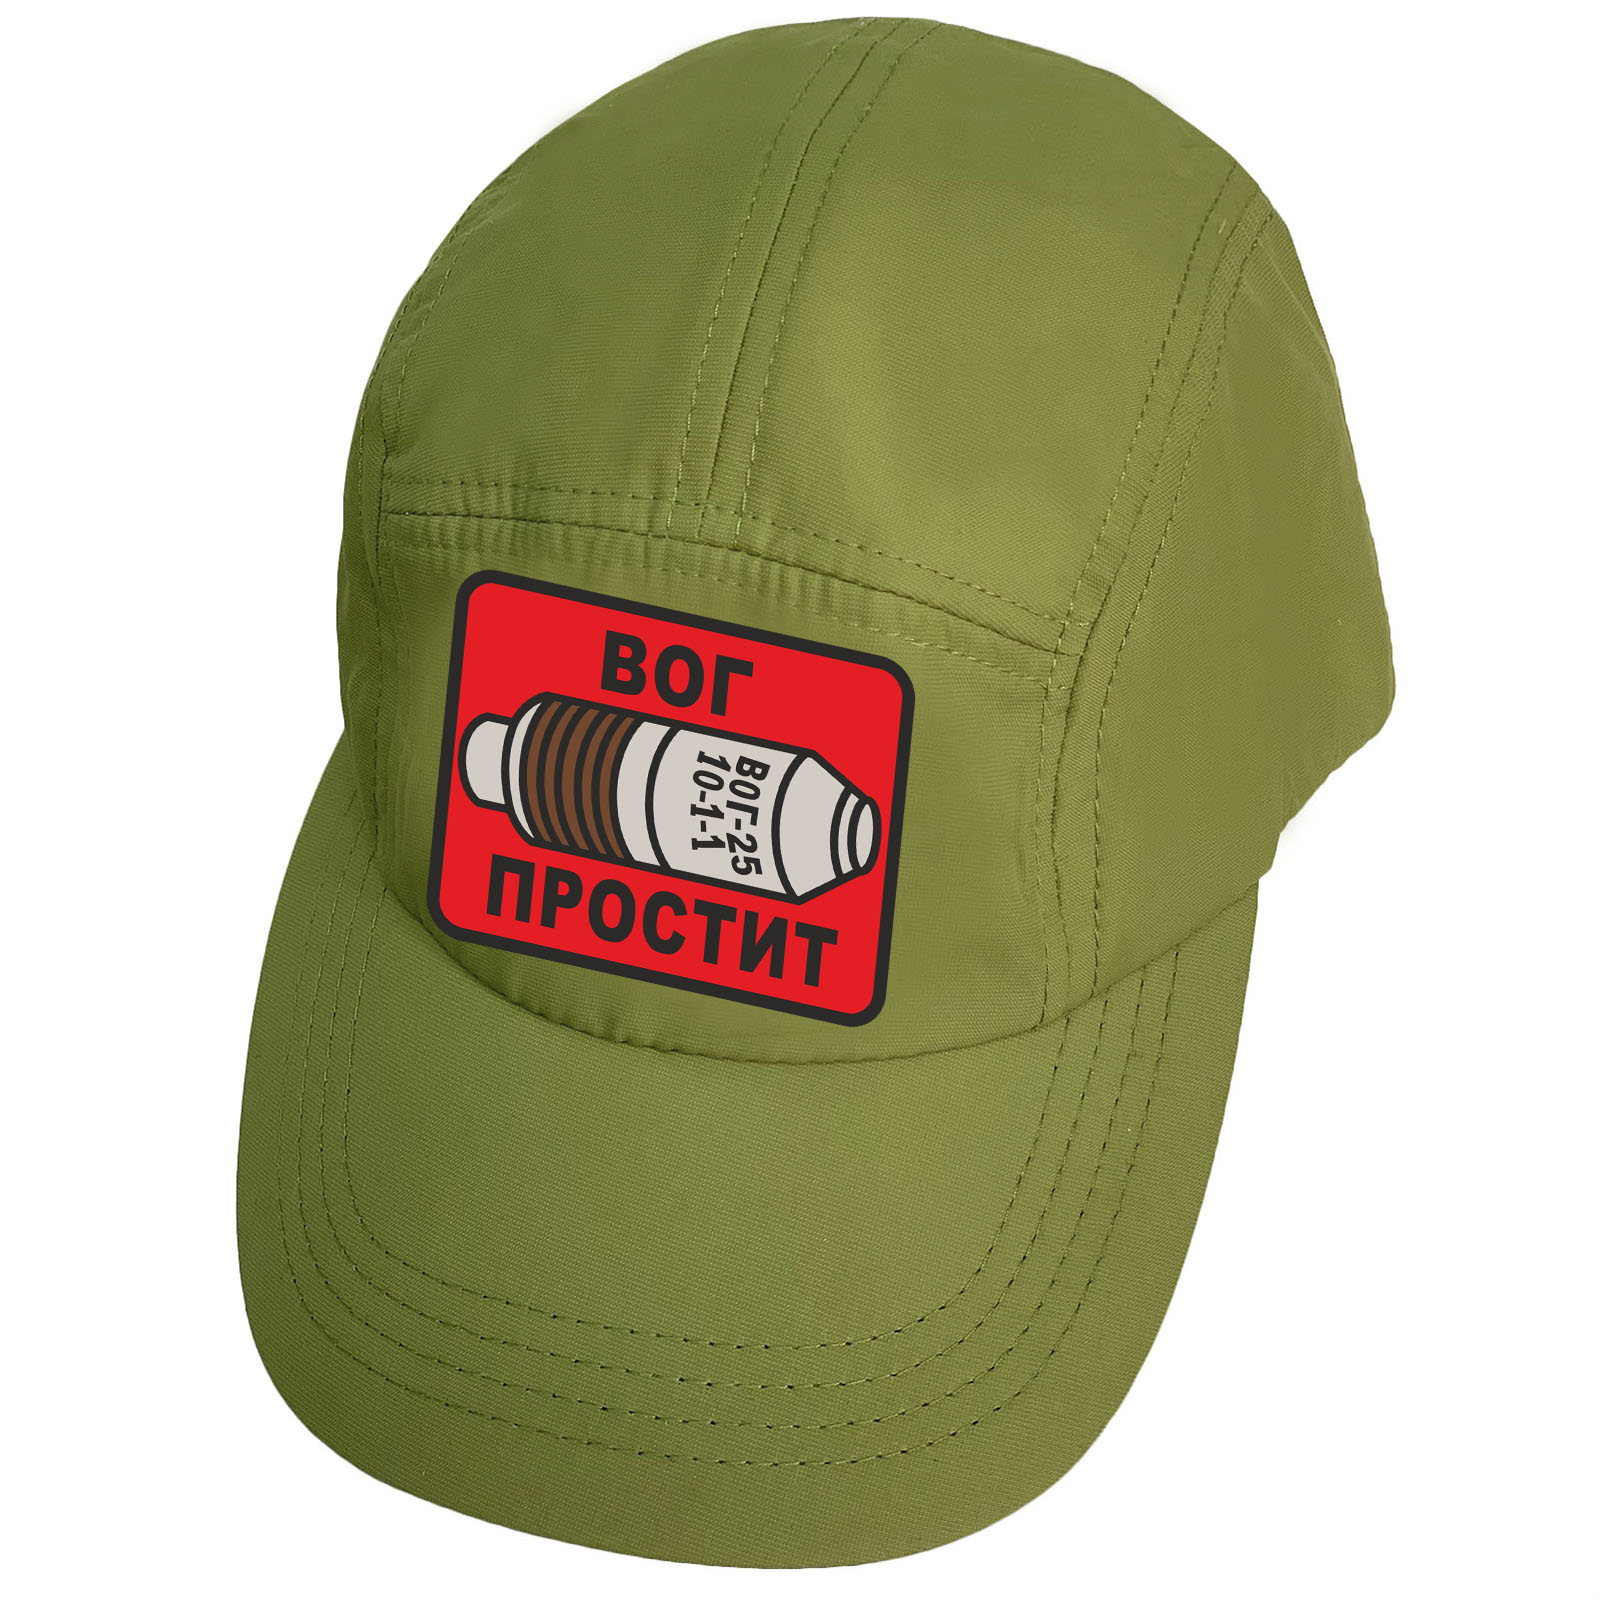 Купить зеленую стильную кепку-пятипанельку с термоаппликацией ВОГ простит выгодно